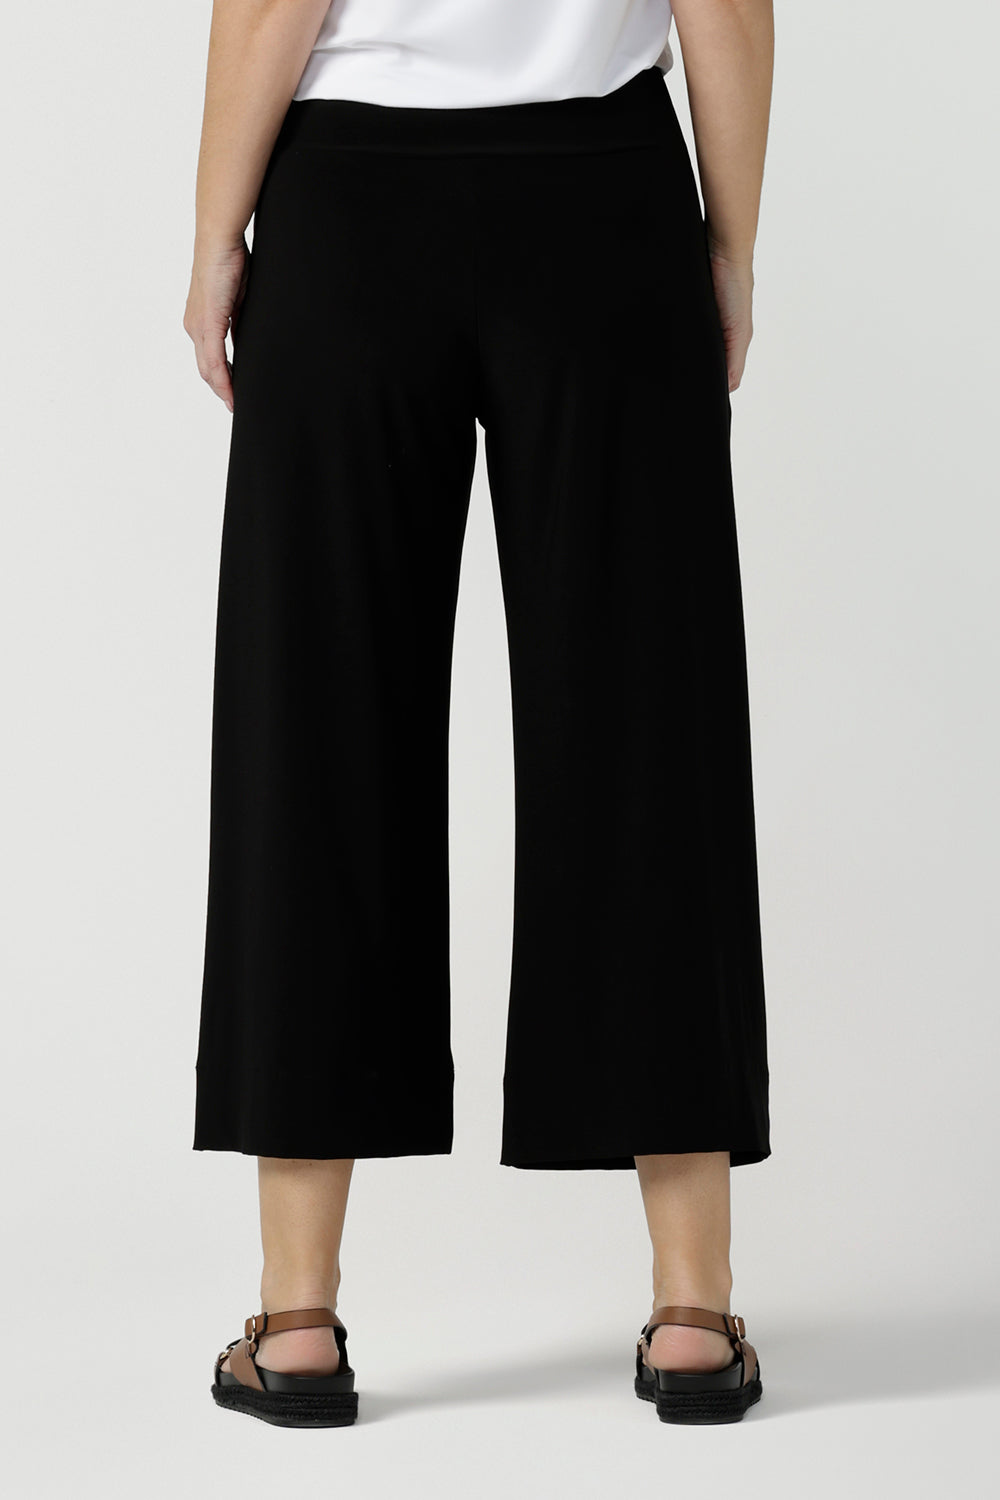 Black cotton flex culotte pant – Fabnest